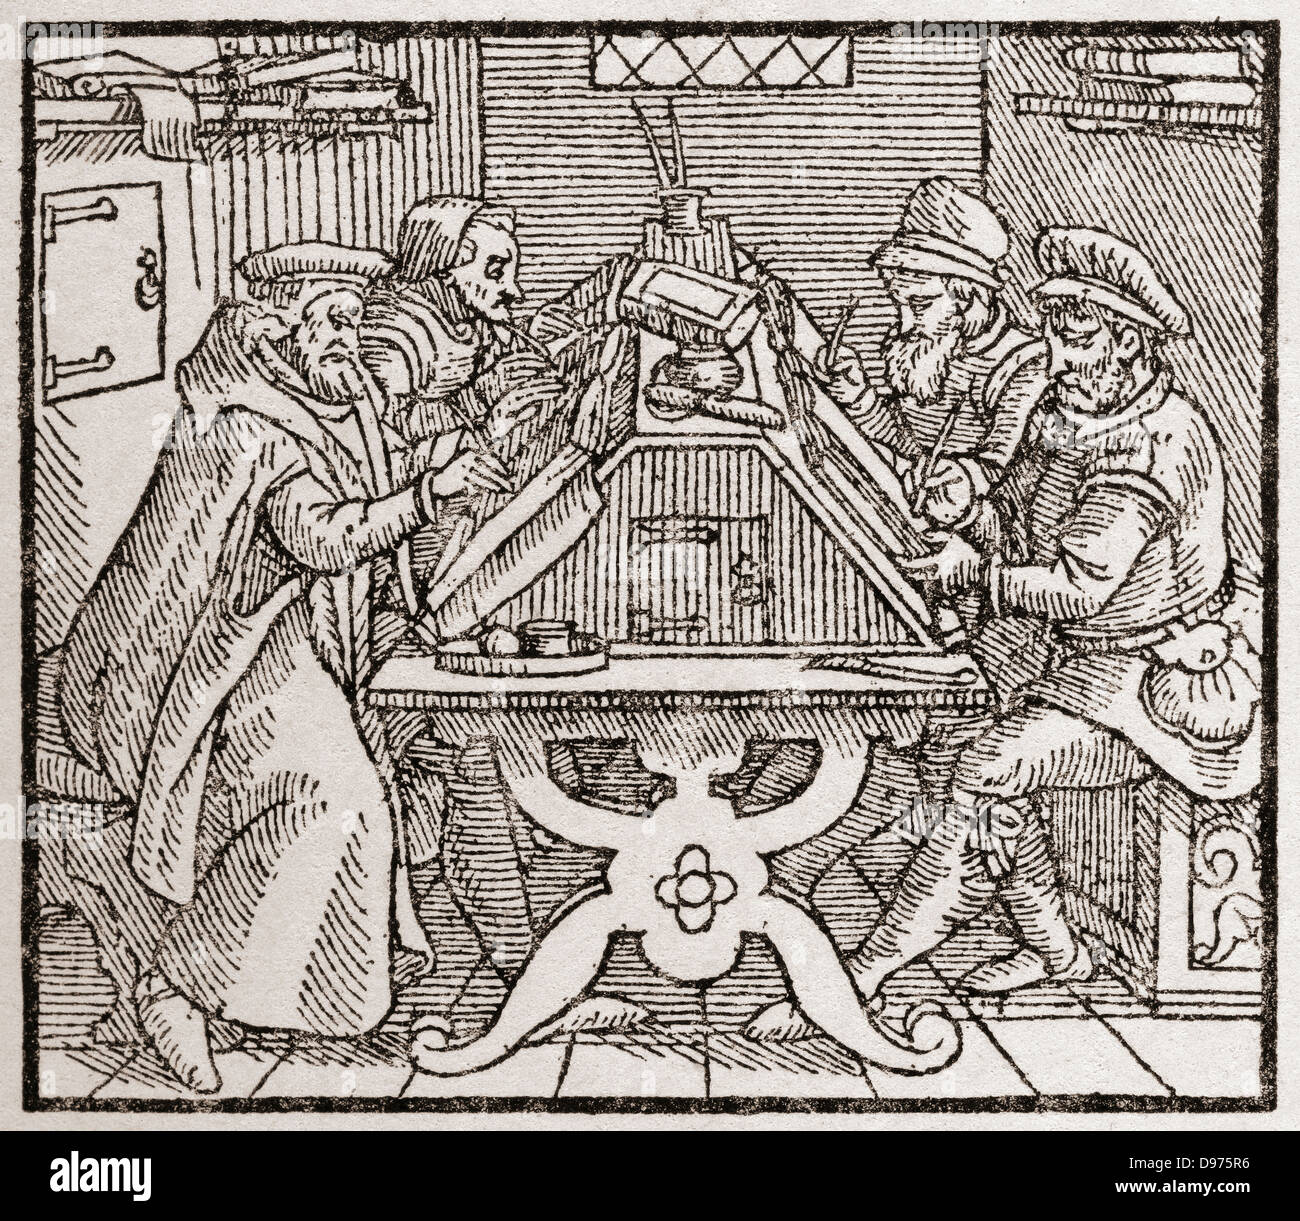 Les scribes au travail pendant la période Tudor en Angleterre. À partir d'une impression contemporaine. Banque D'Images